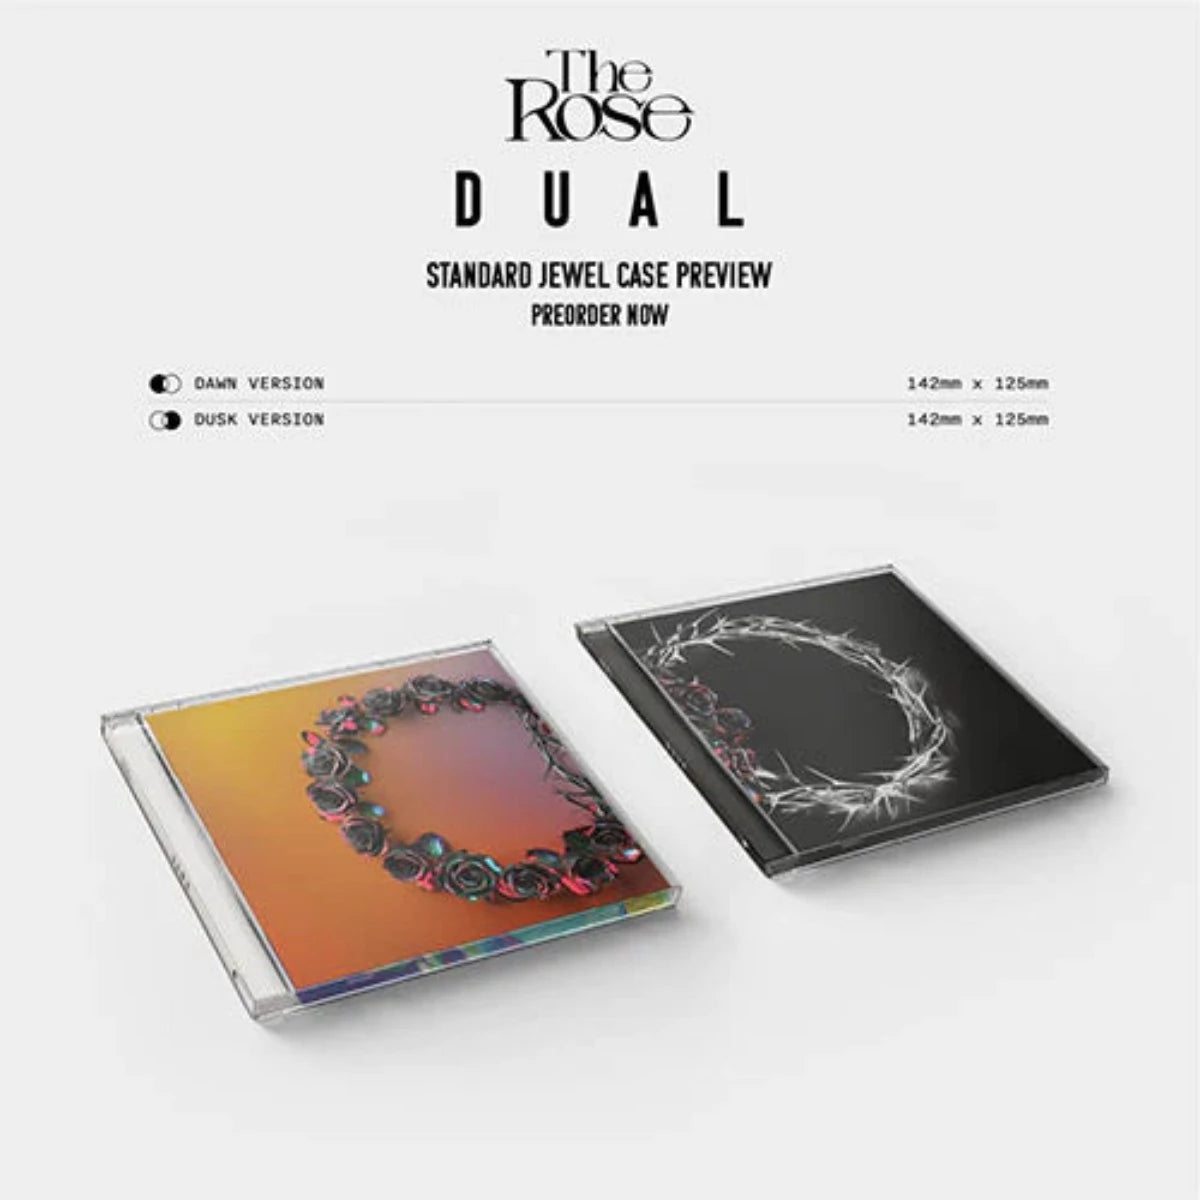 THE ROSE - DUAL 2ND FULL ALBUM (Jewel Album)